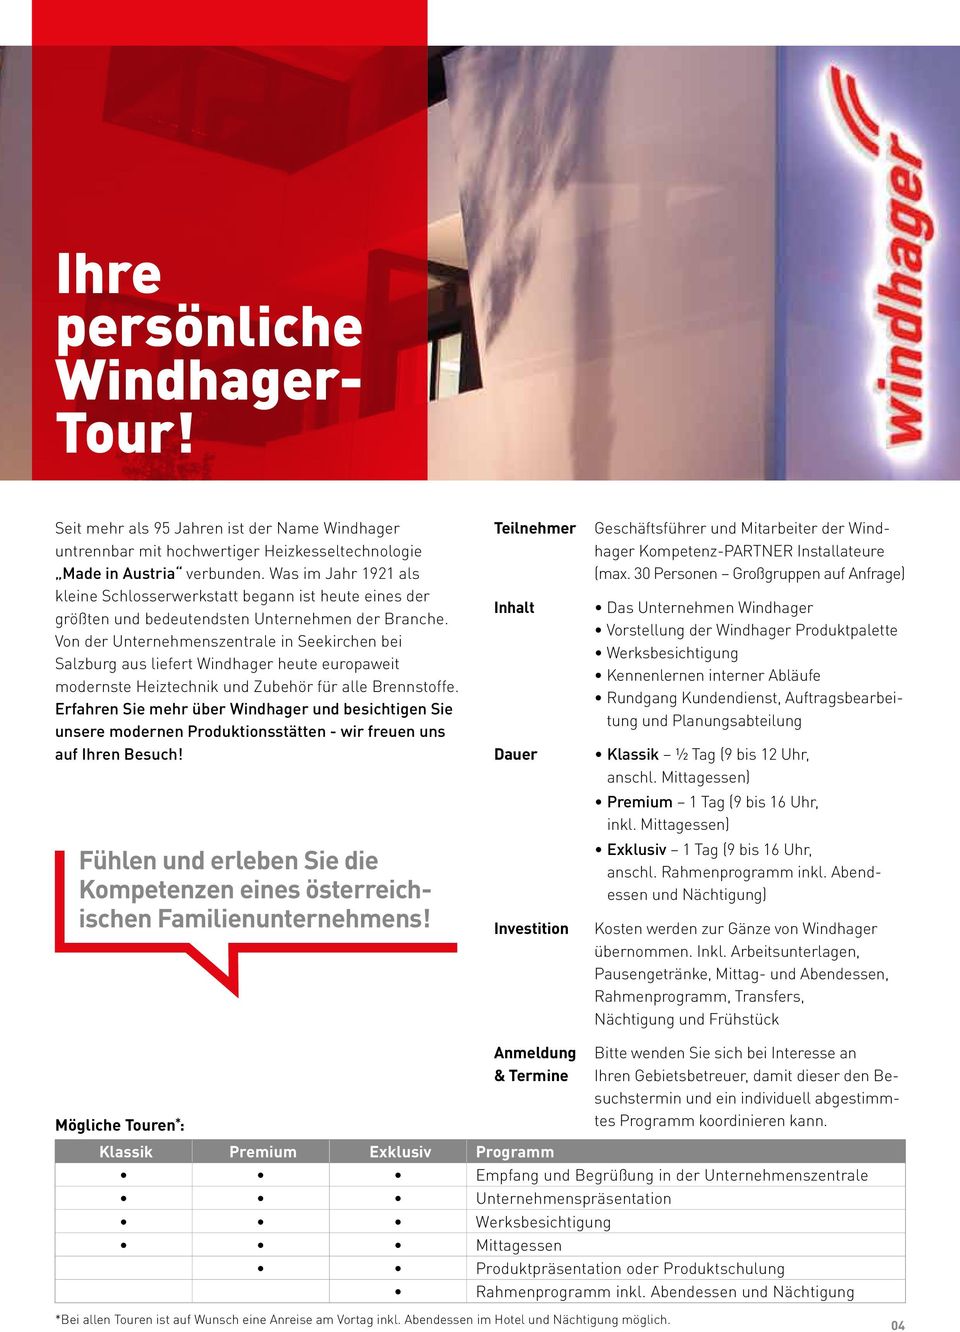 Von der Unternehmenszentrale in Seekirchen bei Salzburg aus liefert Windhager heute europaweit modernste Heiztechnik und Zubehör für alle Brennstoffe.